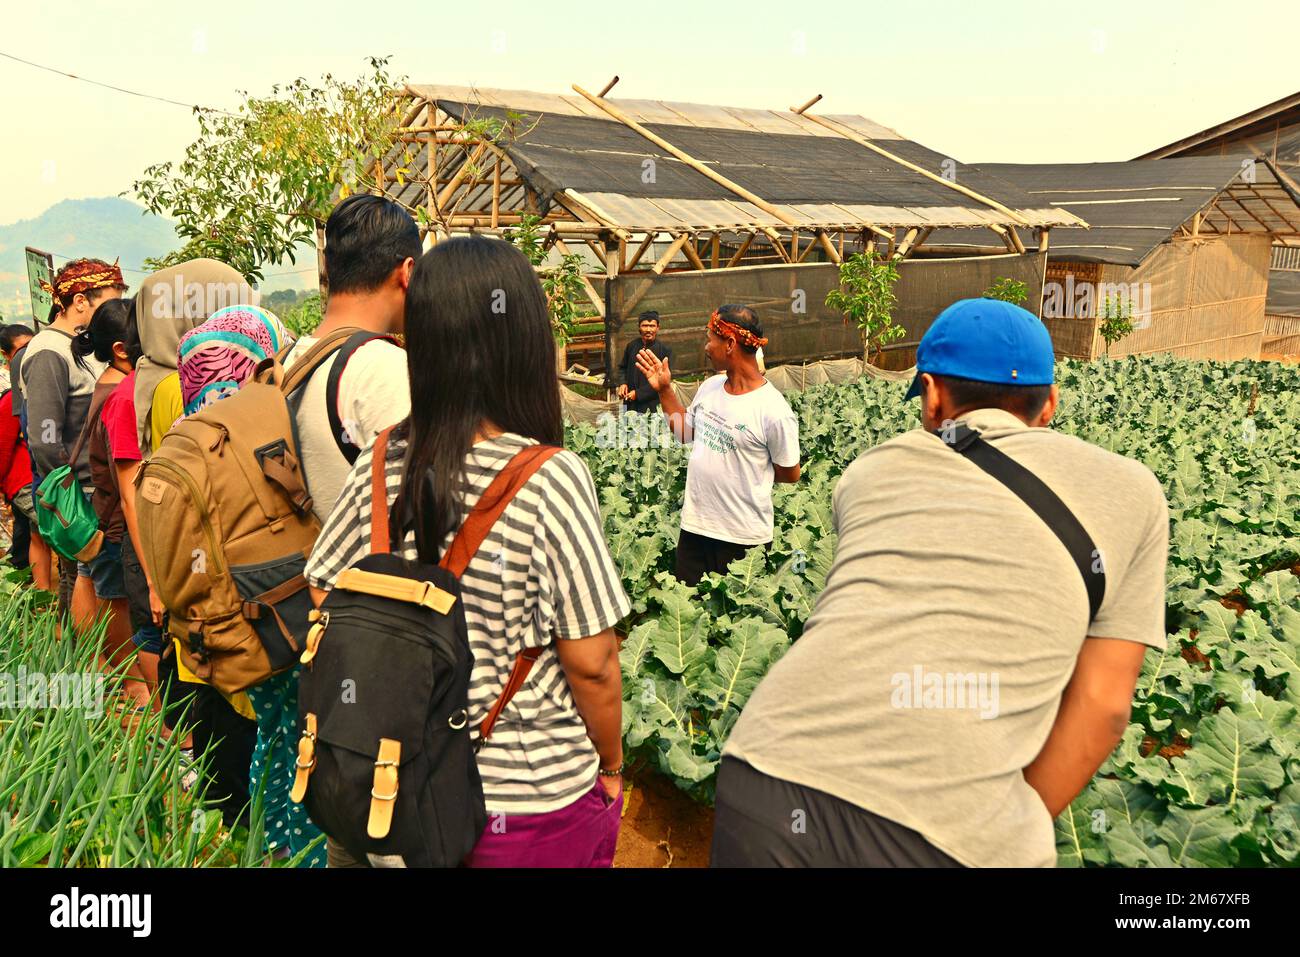 Ein Landwirt, der den Besuchern auf einem Feld mit ökologischem Gemüse während des "Festival Sarongge", einer landwirtschaftlichen Thanksgiving-Veranstaltung, die zeitgleich mit der Feier des Unabhängigkeitstages Indonesiens stattfindet, der jedes Jahr am 17. August in Ciputri, Pacet, Cianjur, West Java begangen wird, eine Erklärung über den ökologischen Landbau gibt, Indonesien. Stockfoto